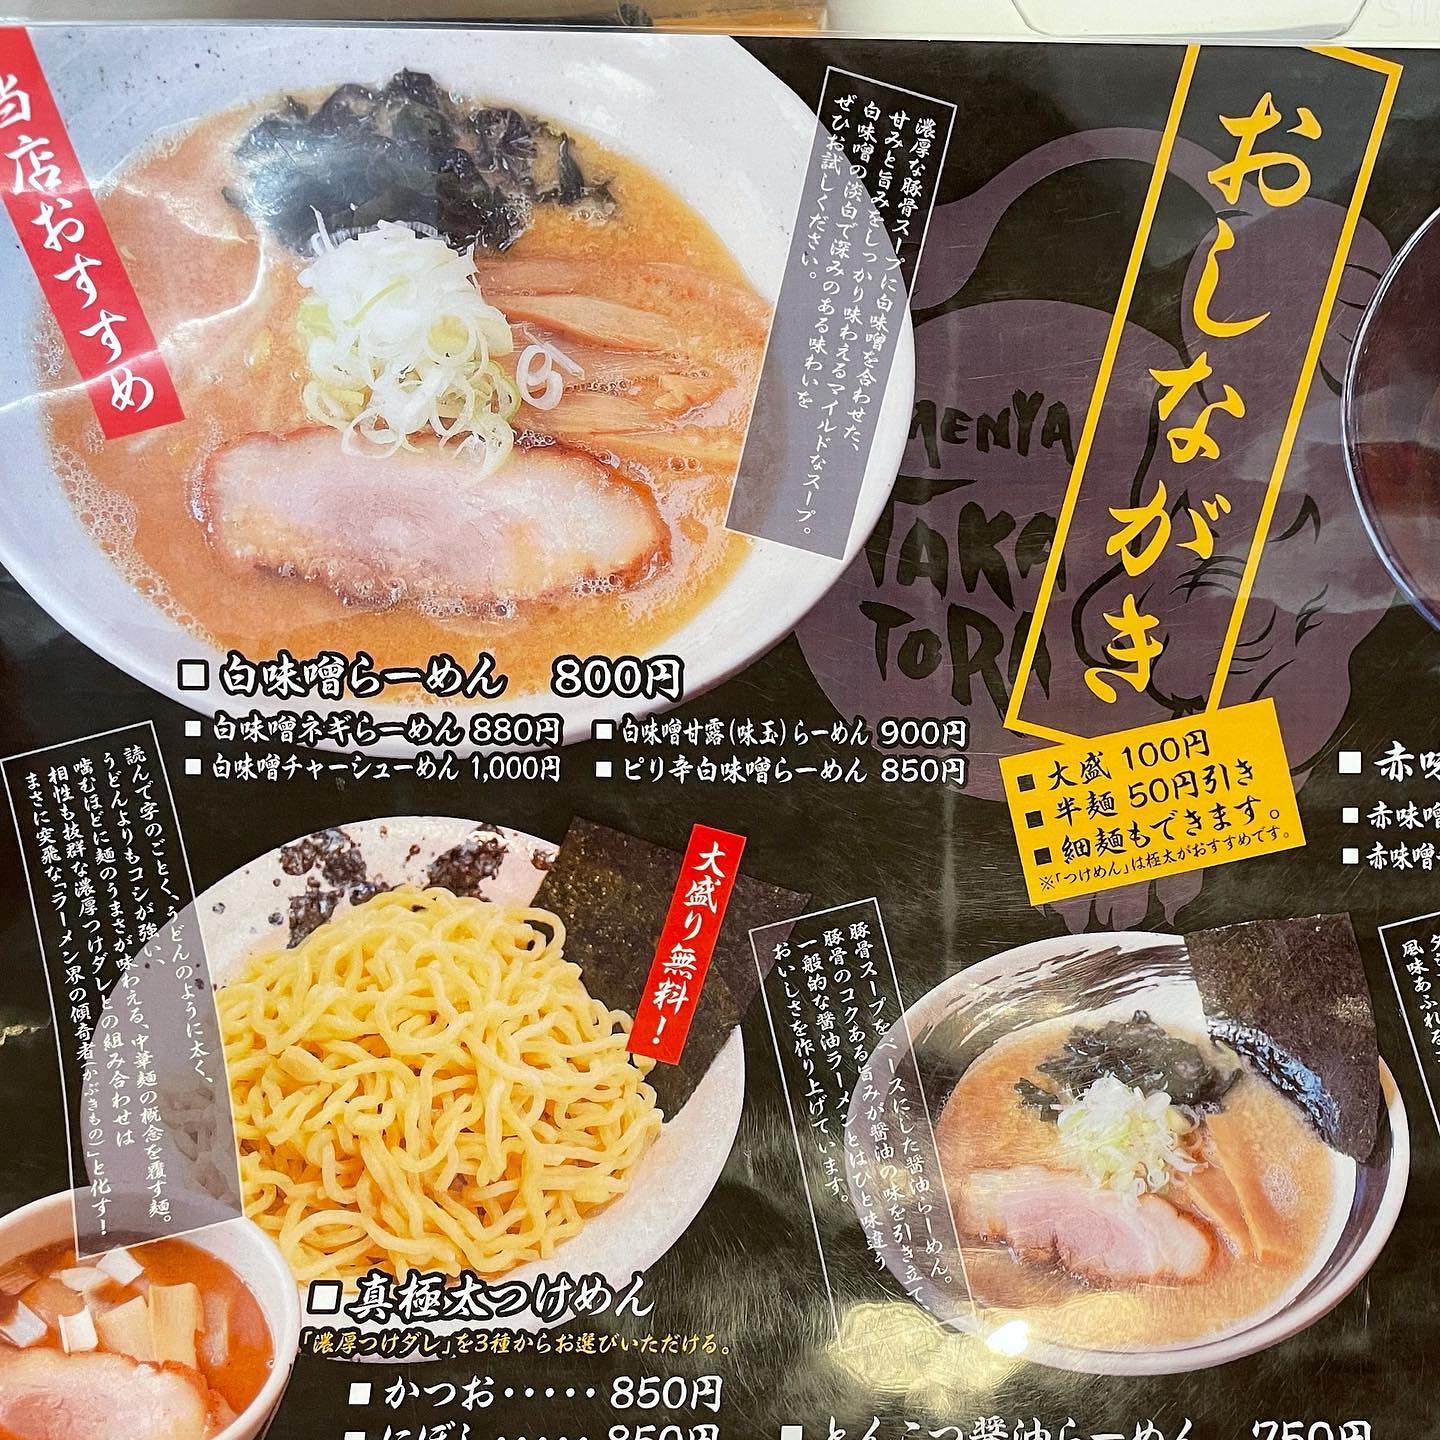 青森県弘前市にある「麺屋 たか虎」の「メニュー」